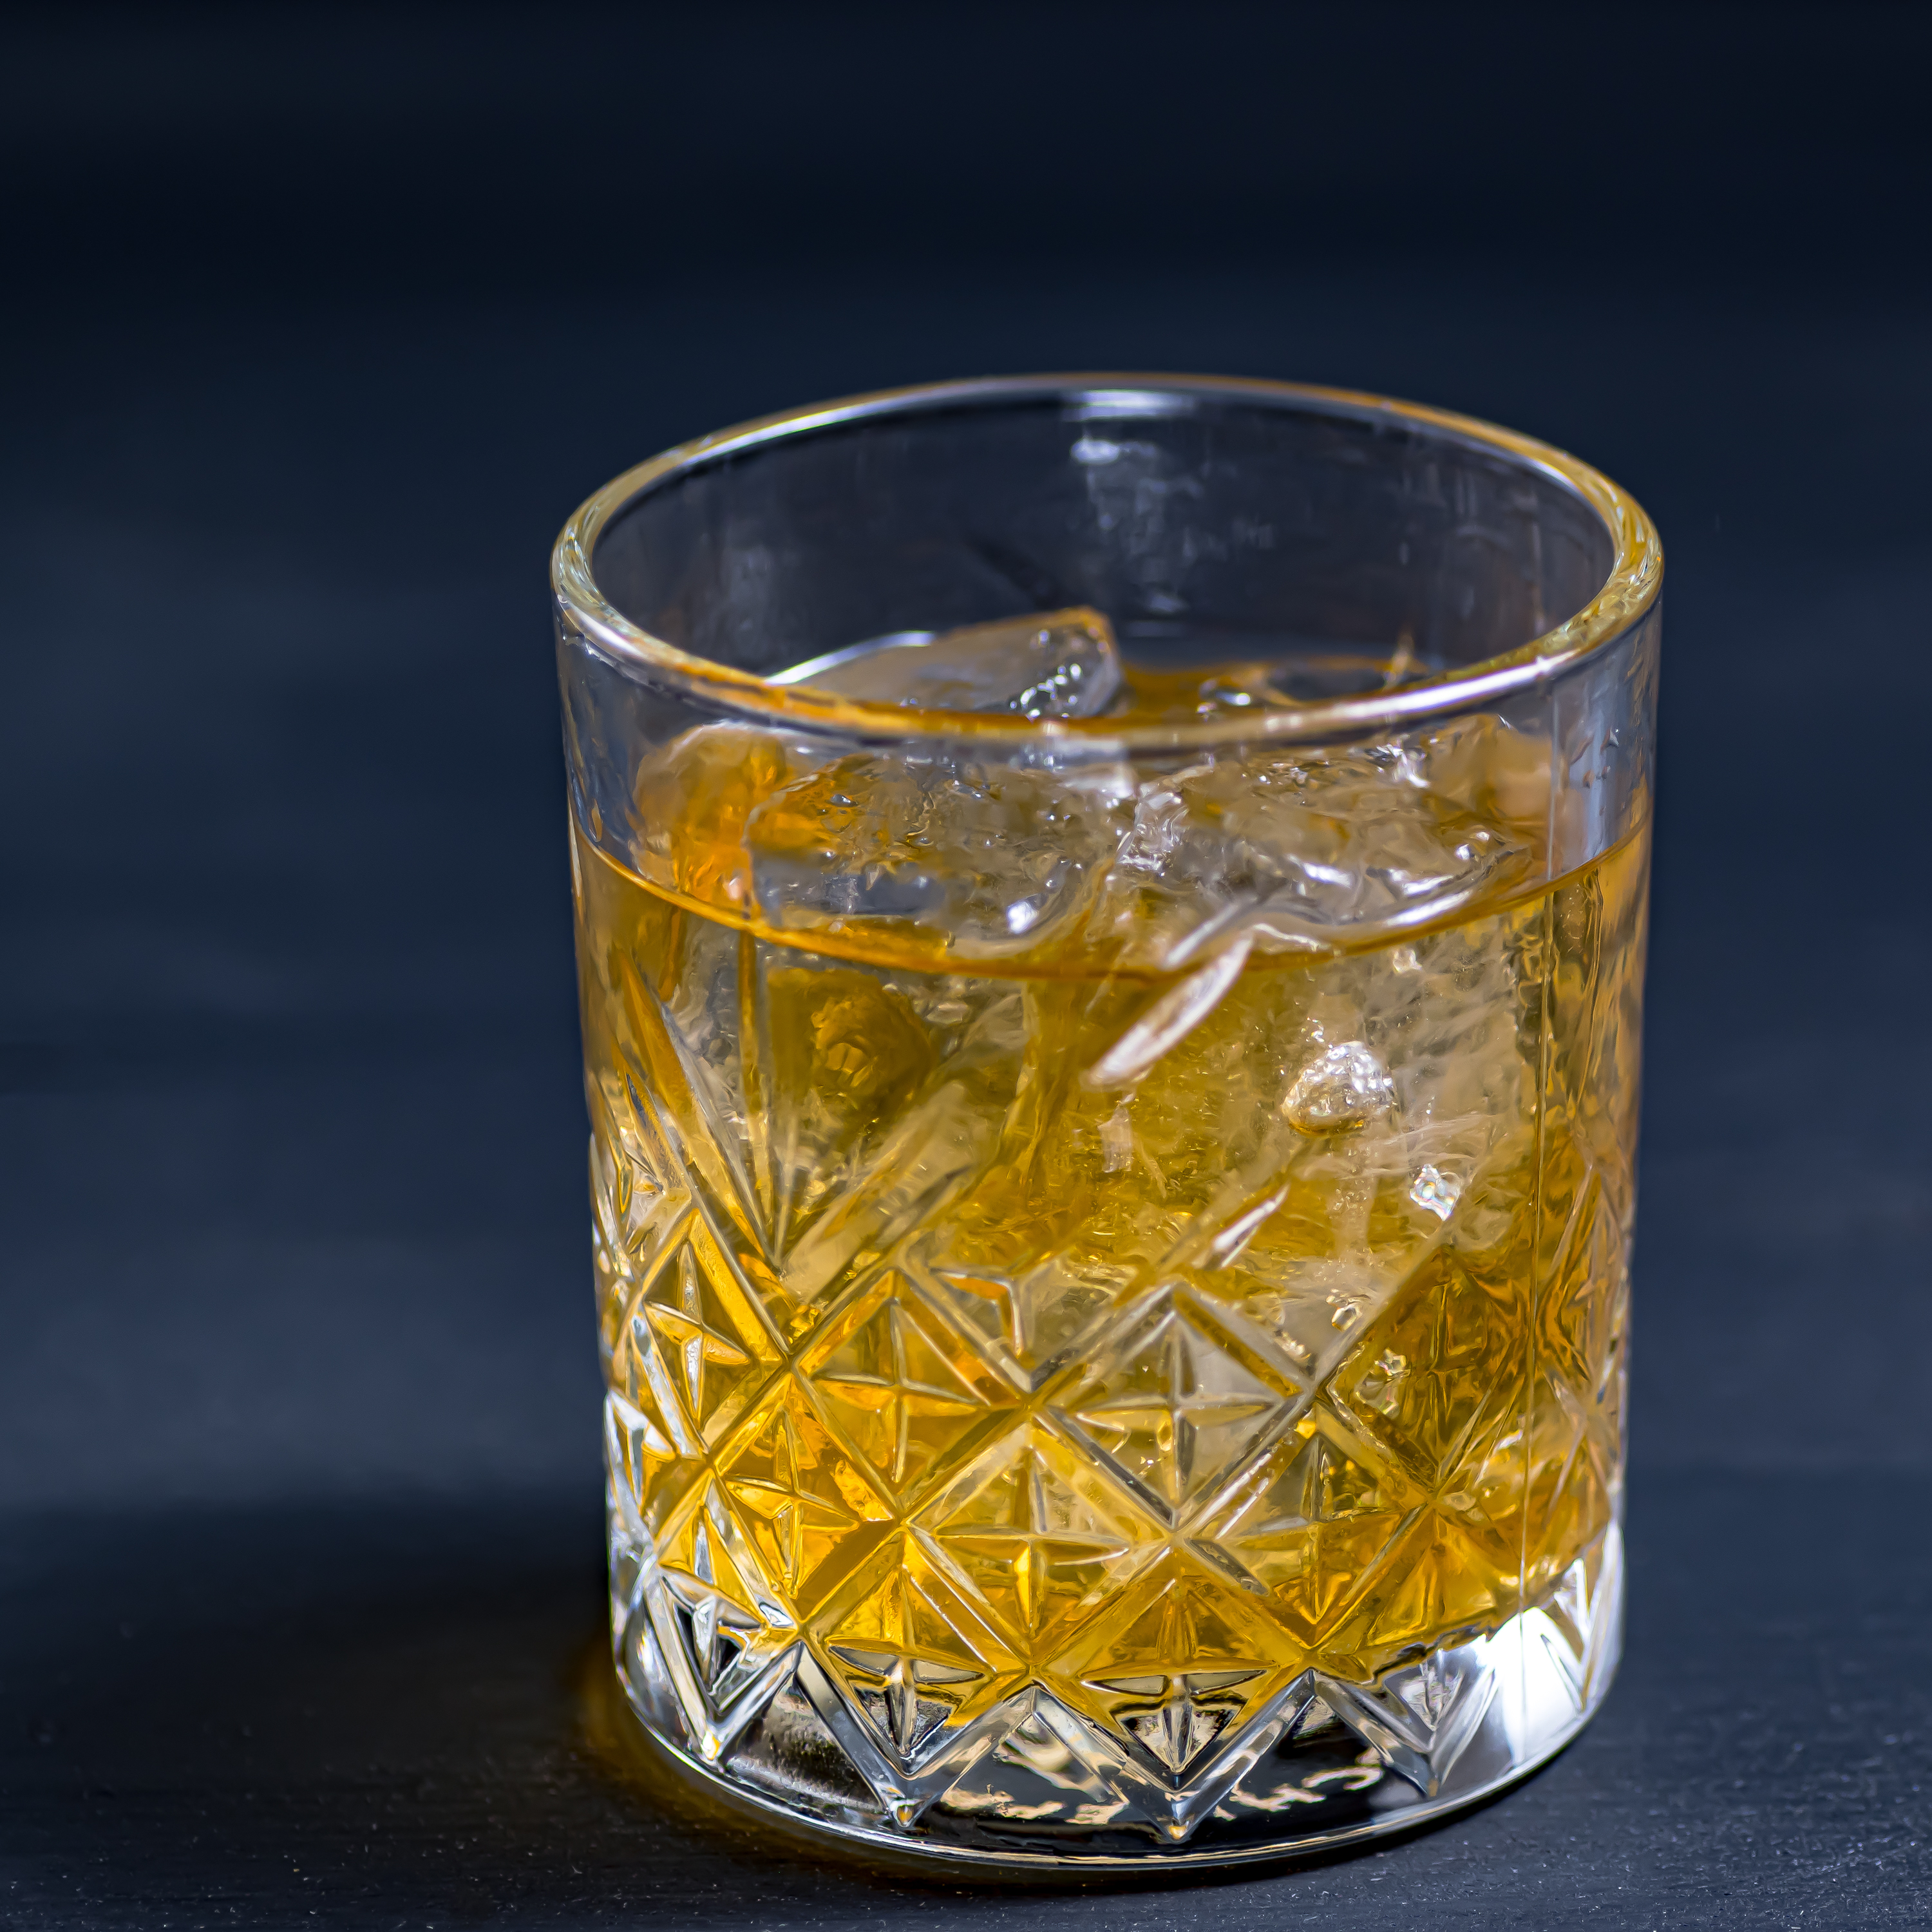 Ein Godfather Cocktail mit Scotch Whisky und Amaretto.